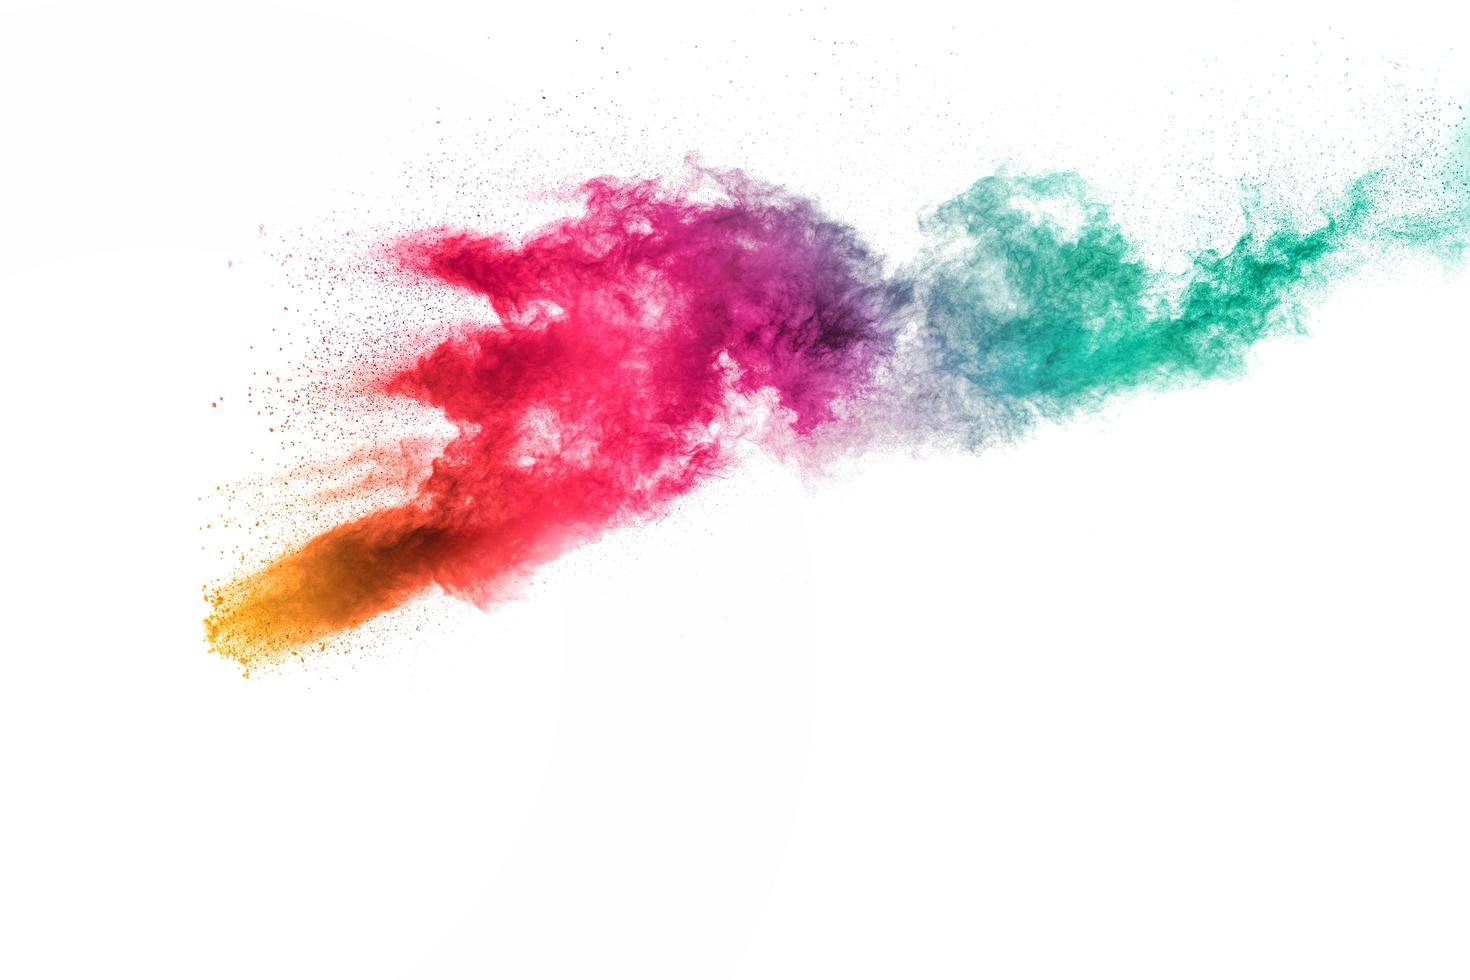 esplosione di polvere multi colore astratta su sfondo bianco. congelare il movimento di schizzi di particelle di polvere. foto